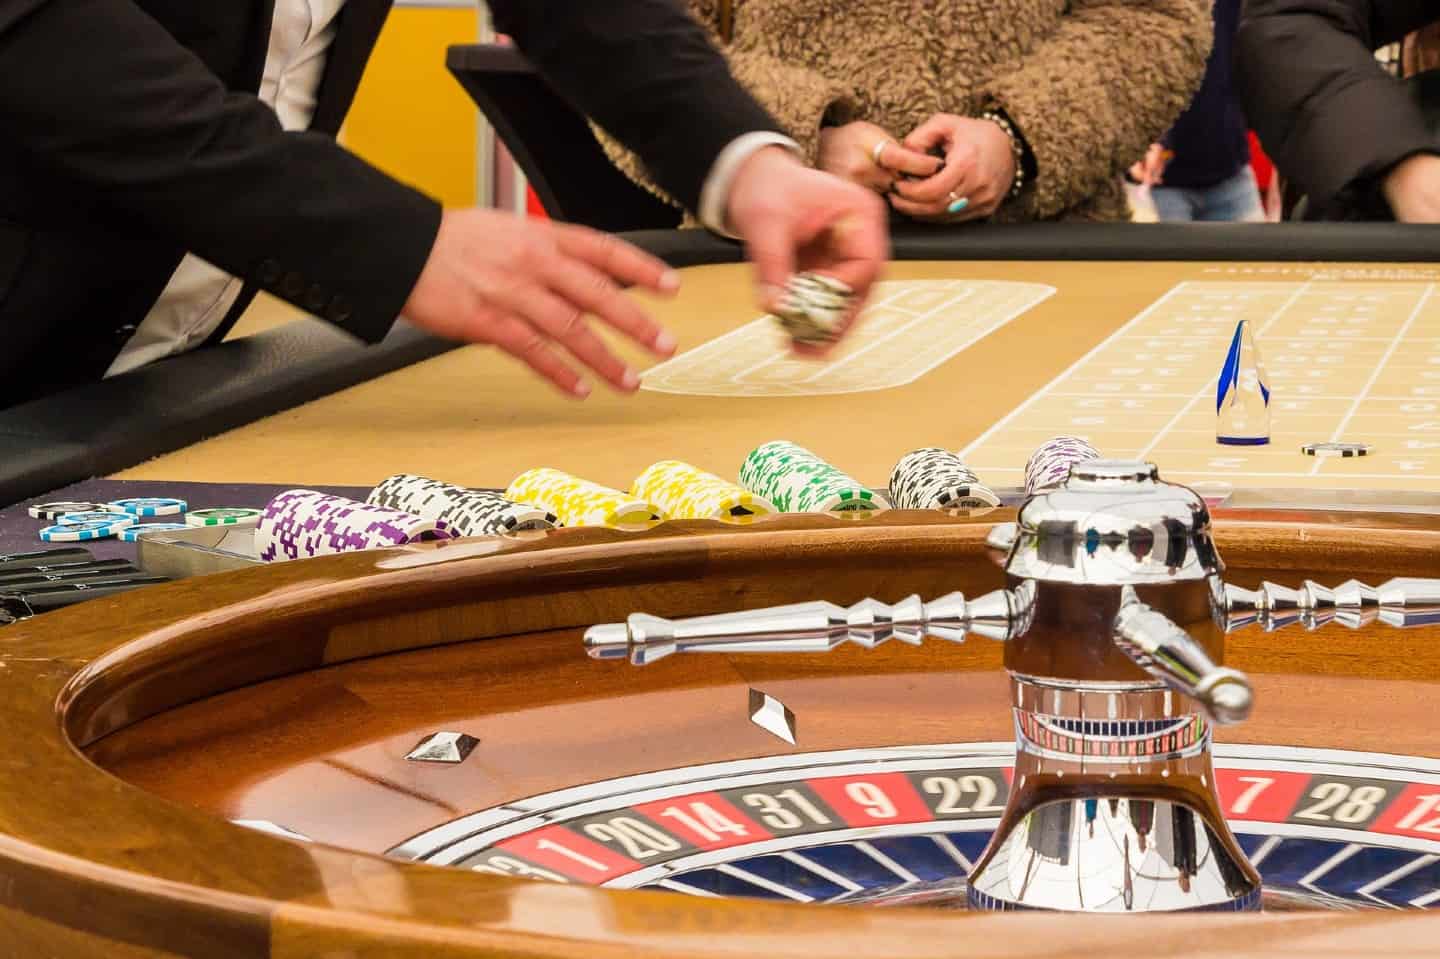 Casinos online portugueses: os jogadores internacionais podem jogar  legalmente?